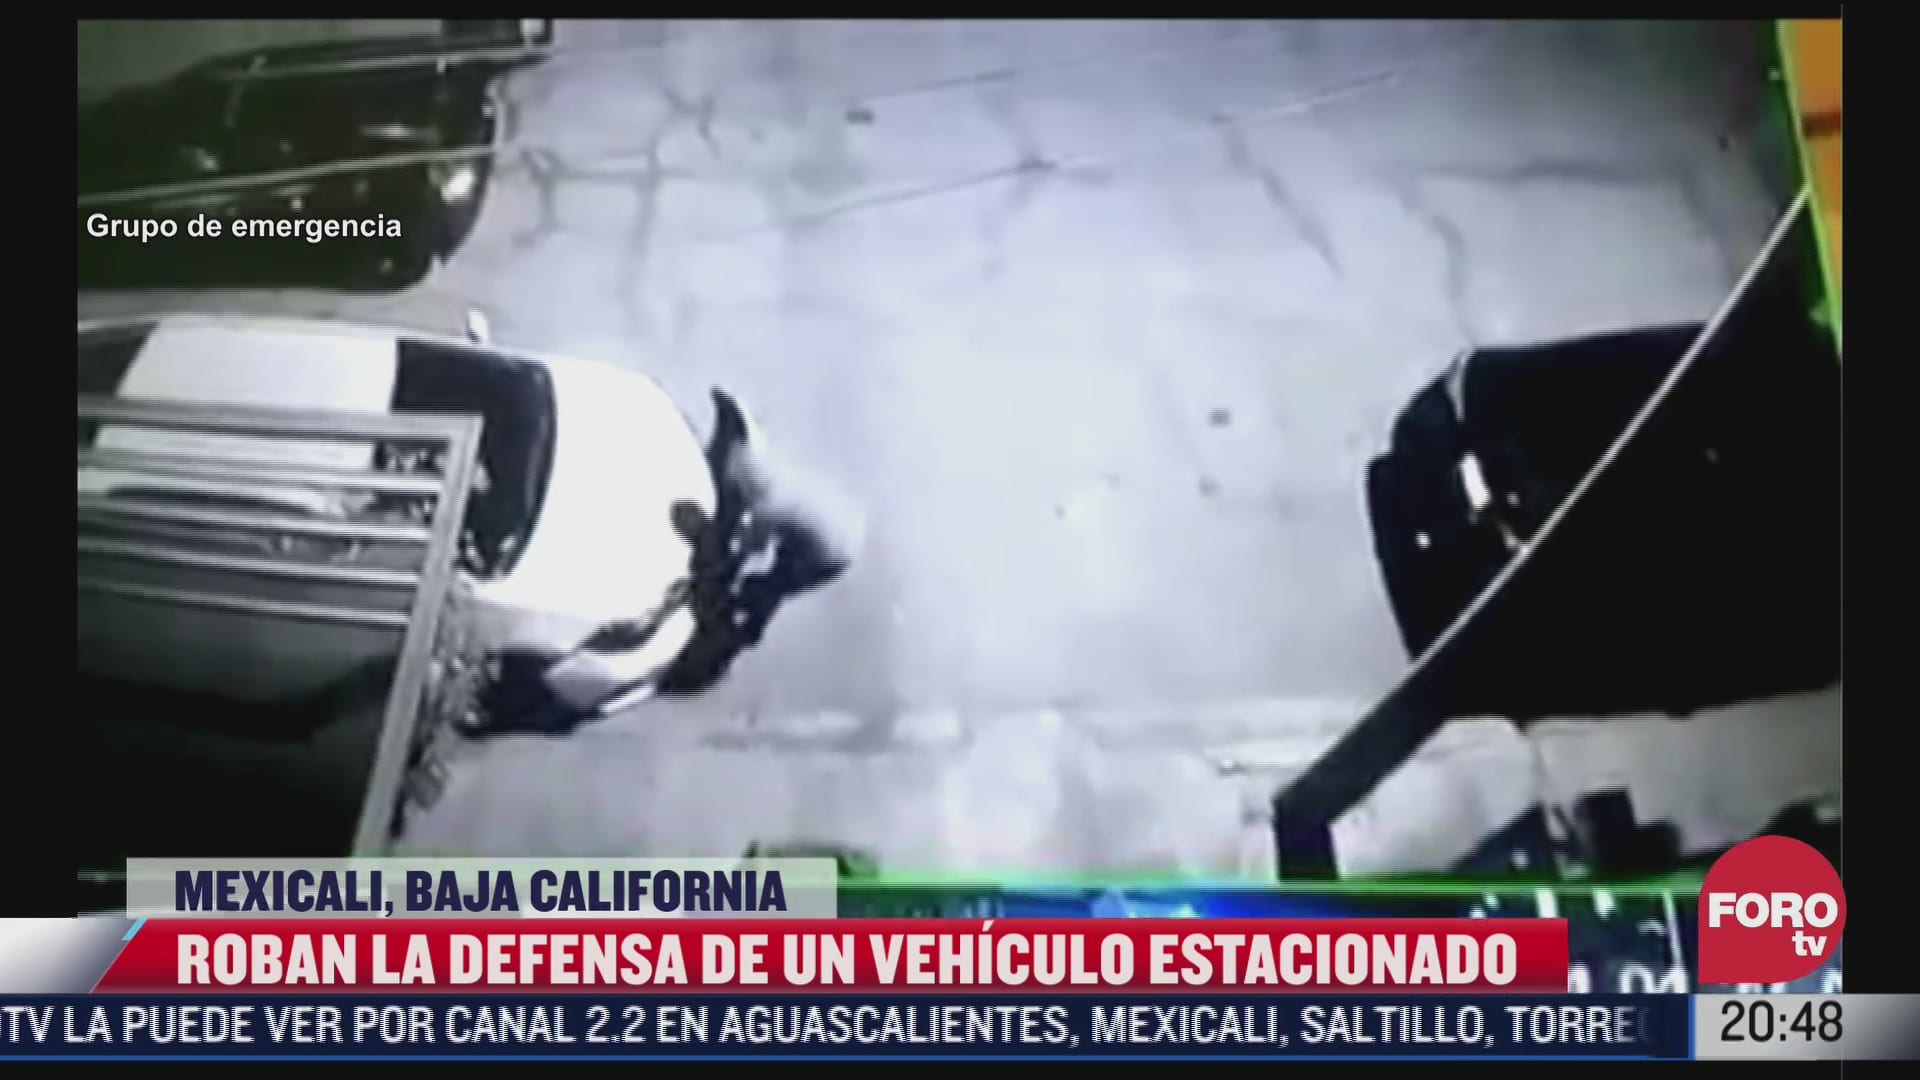 roban defensa de vehiculo estacionado en mexicali